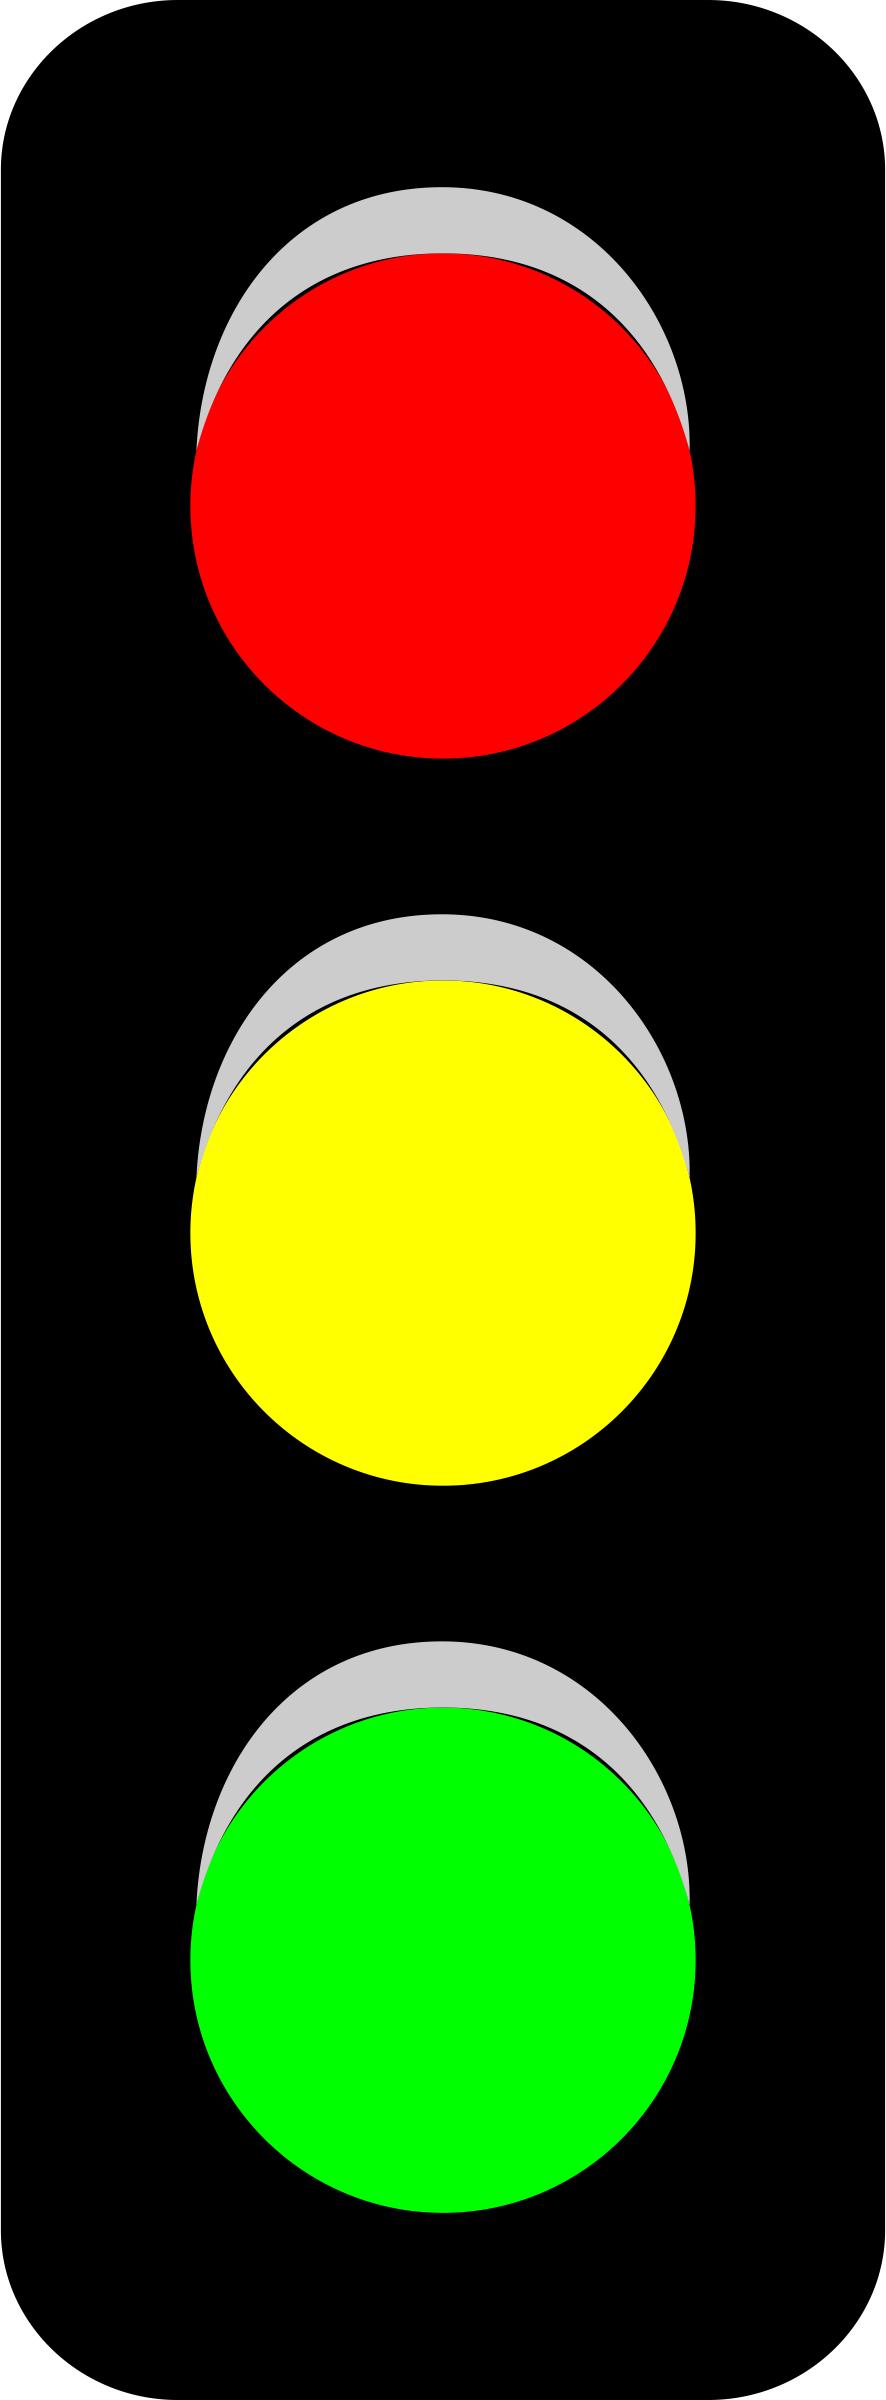 Traffic Light (V) PNG icons